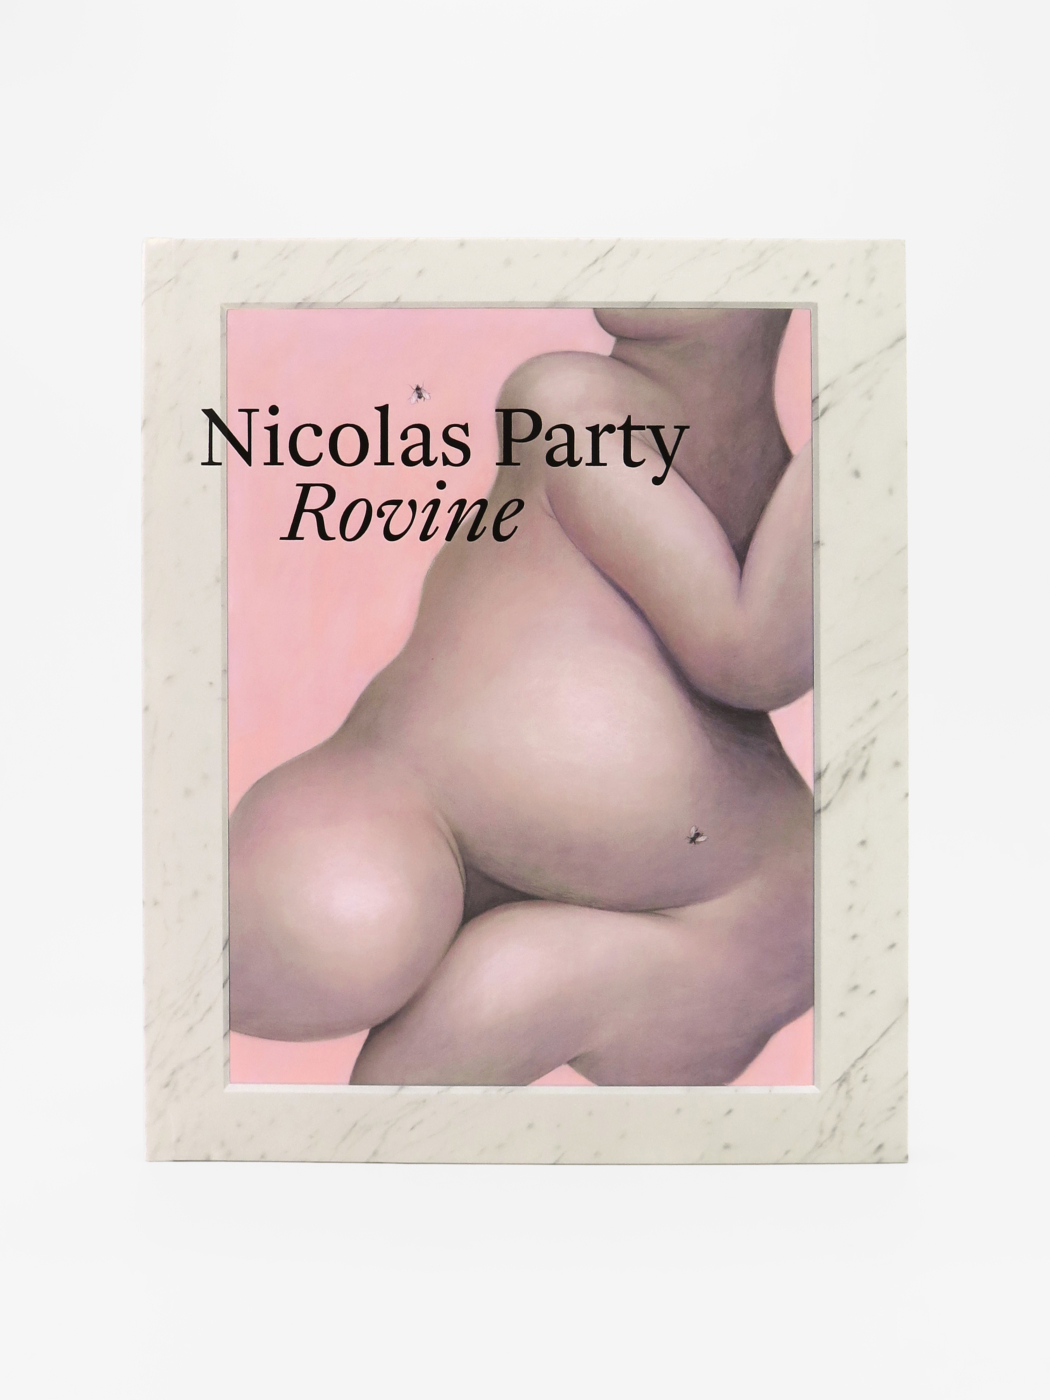 Nicolas Party, Rovine